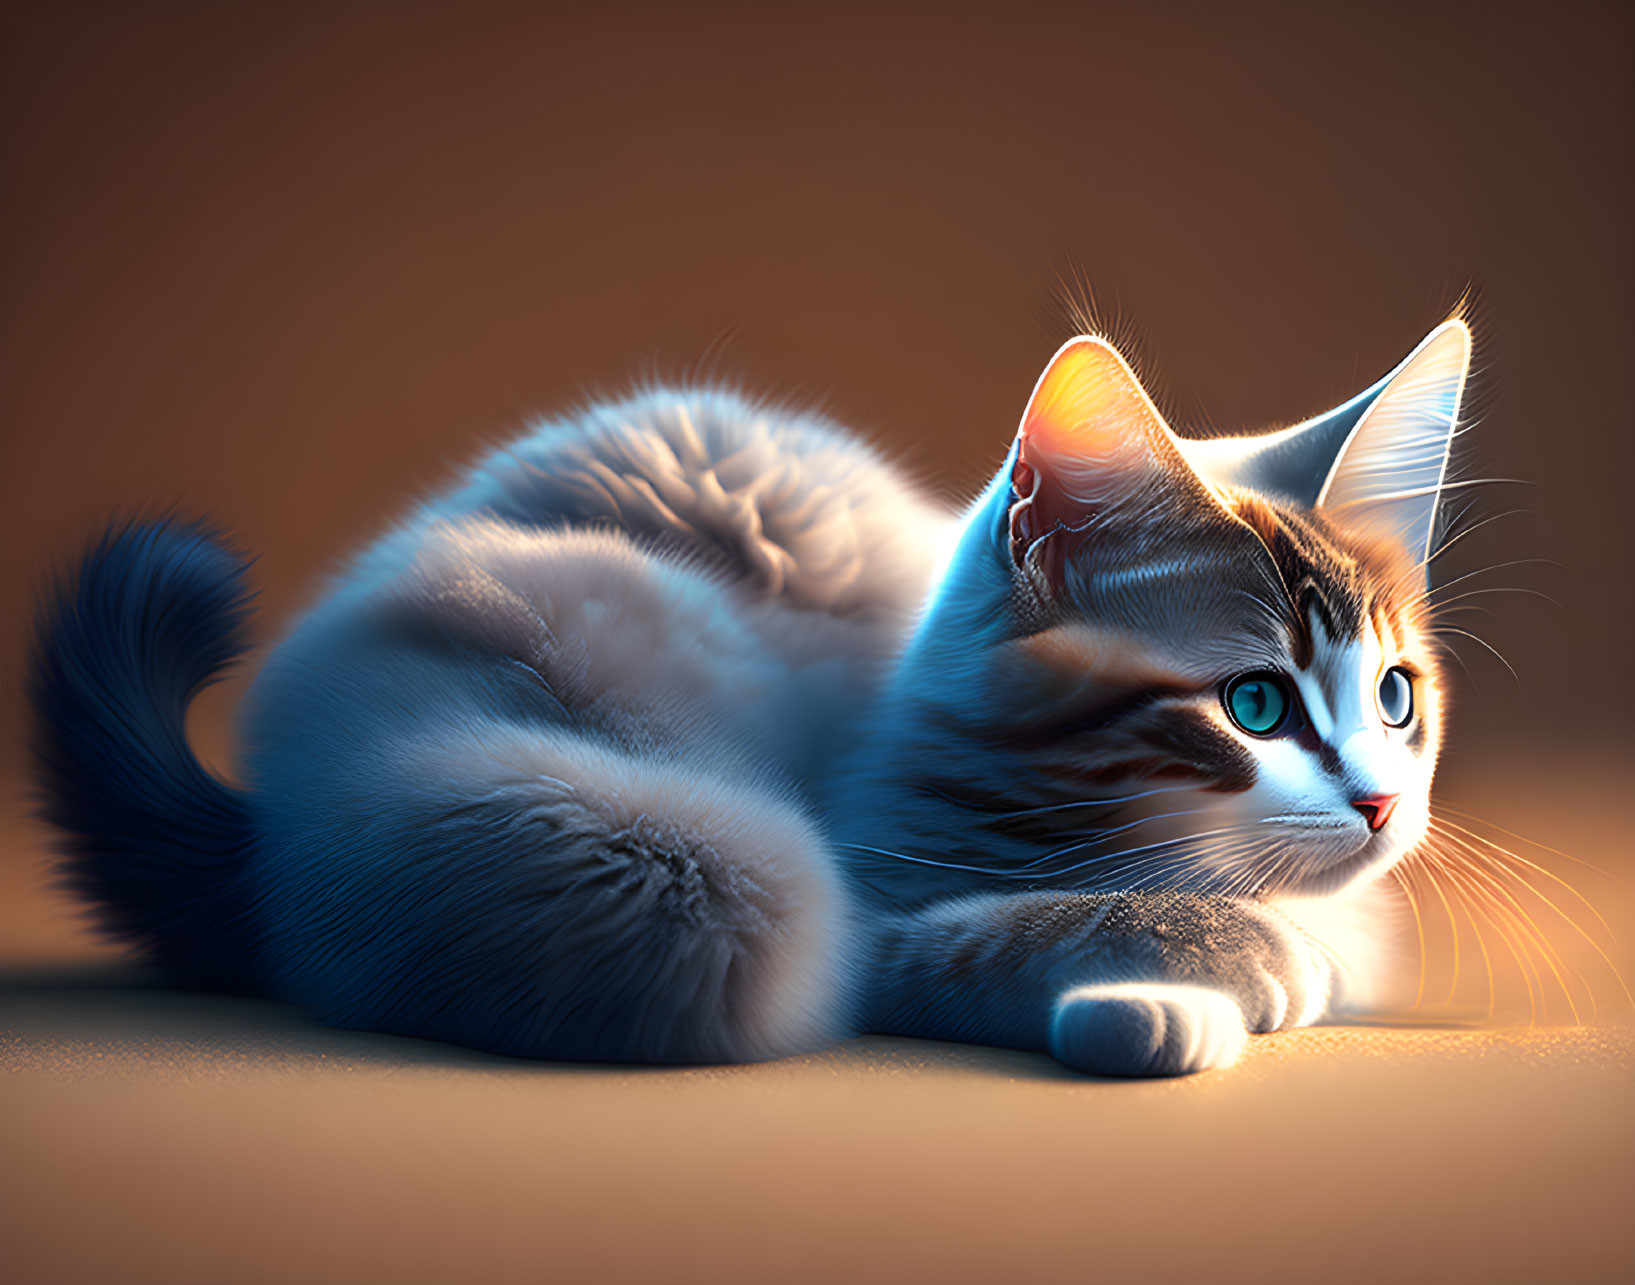 Fluffy Tabby Cat with Striking Blue Eyes in Serene Lighting